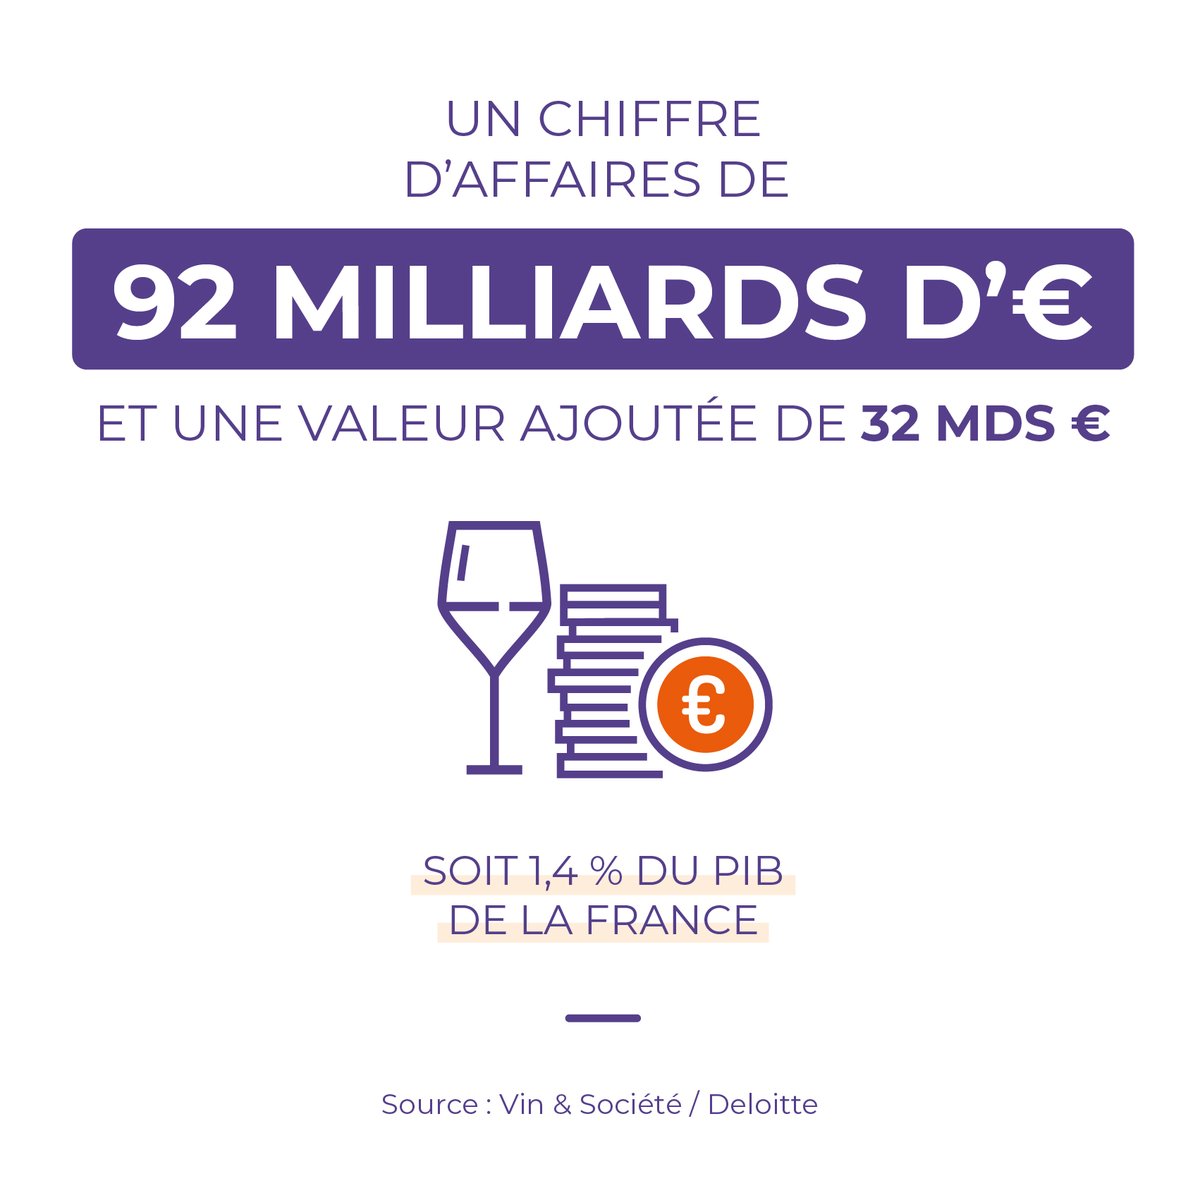 La filière #vin génère en France un chiffre d'affaires de 92 milliards d'euros 💶 Pour plus de chiffres 👉 ow.ly/hbQT50RbuC7